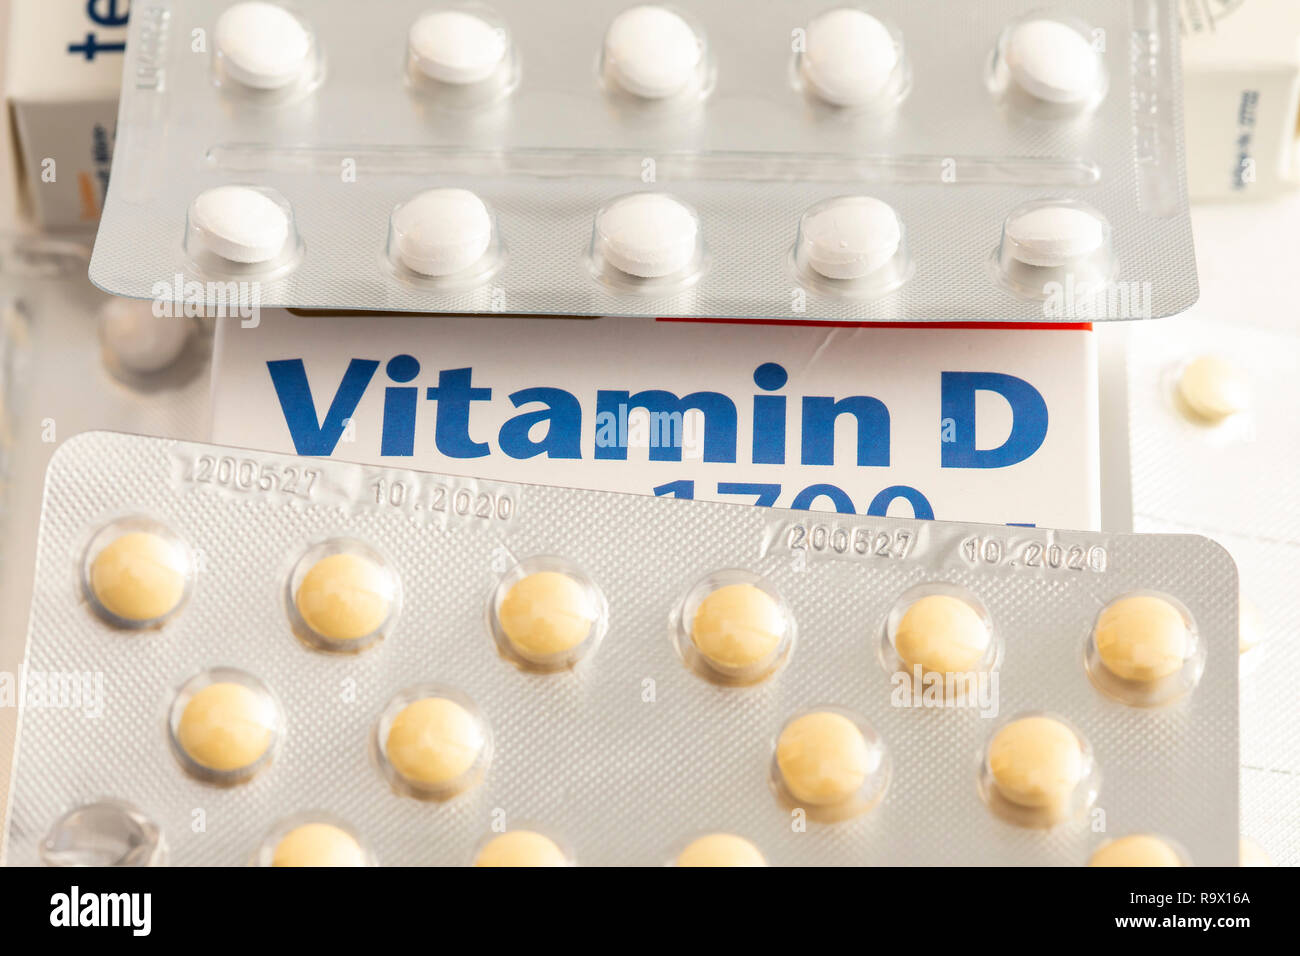 La vitamina D compresse pack, la preparazione è destinata ad integrare la carenza di vitamina D, da bassa radiazione solare, per esempio in inverno, Foto Stock